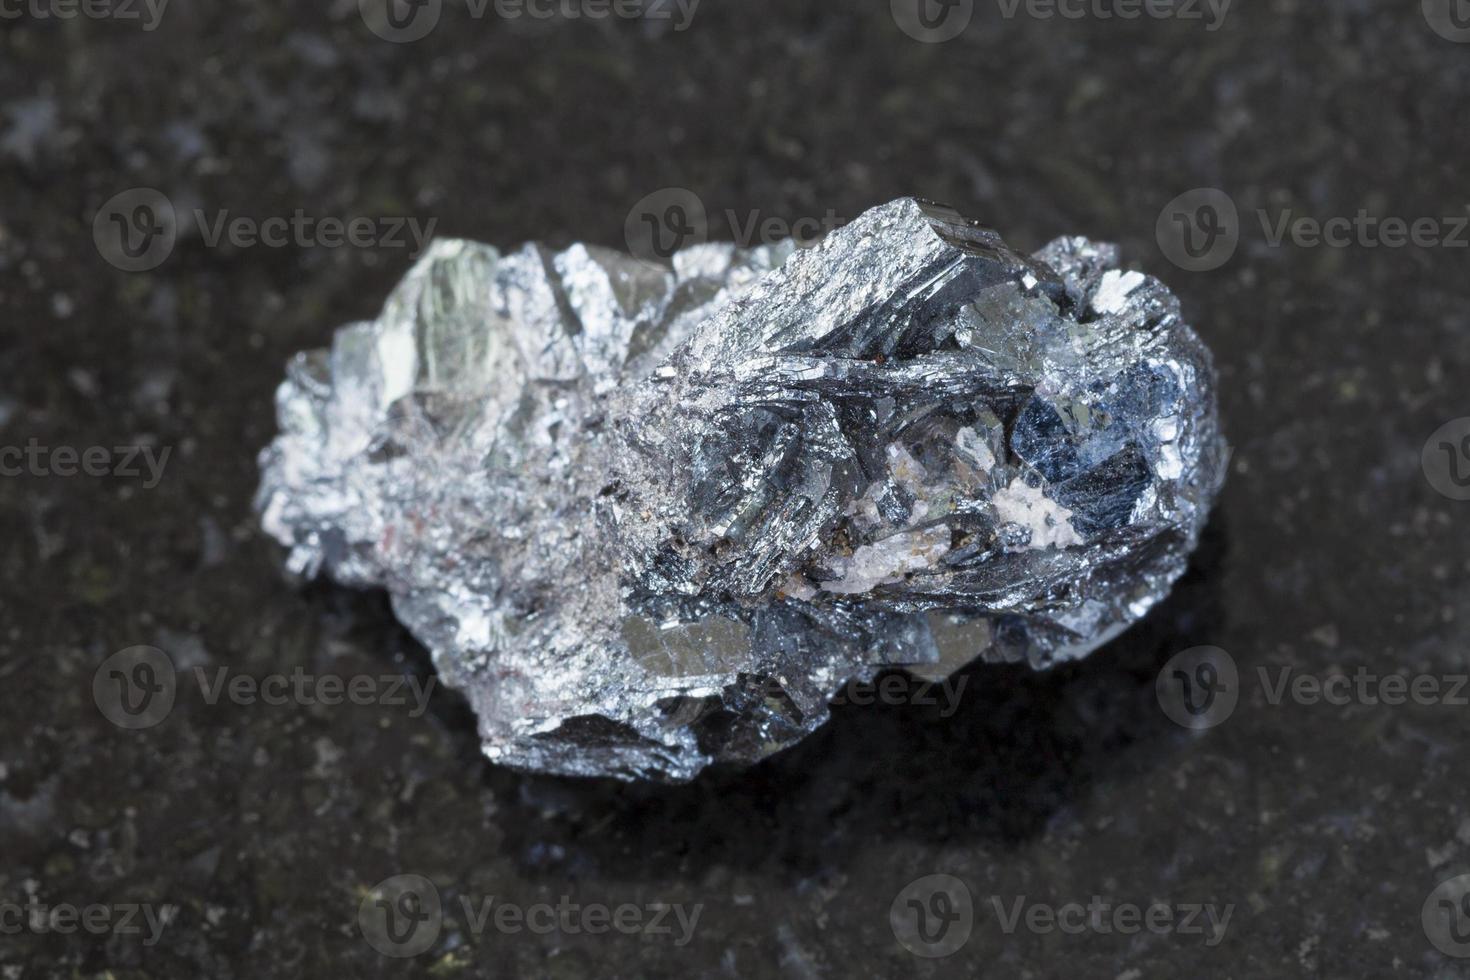 mineral de hematita en bruto sobre fondo oscuro foto